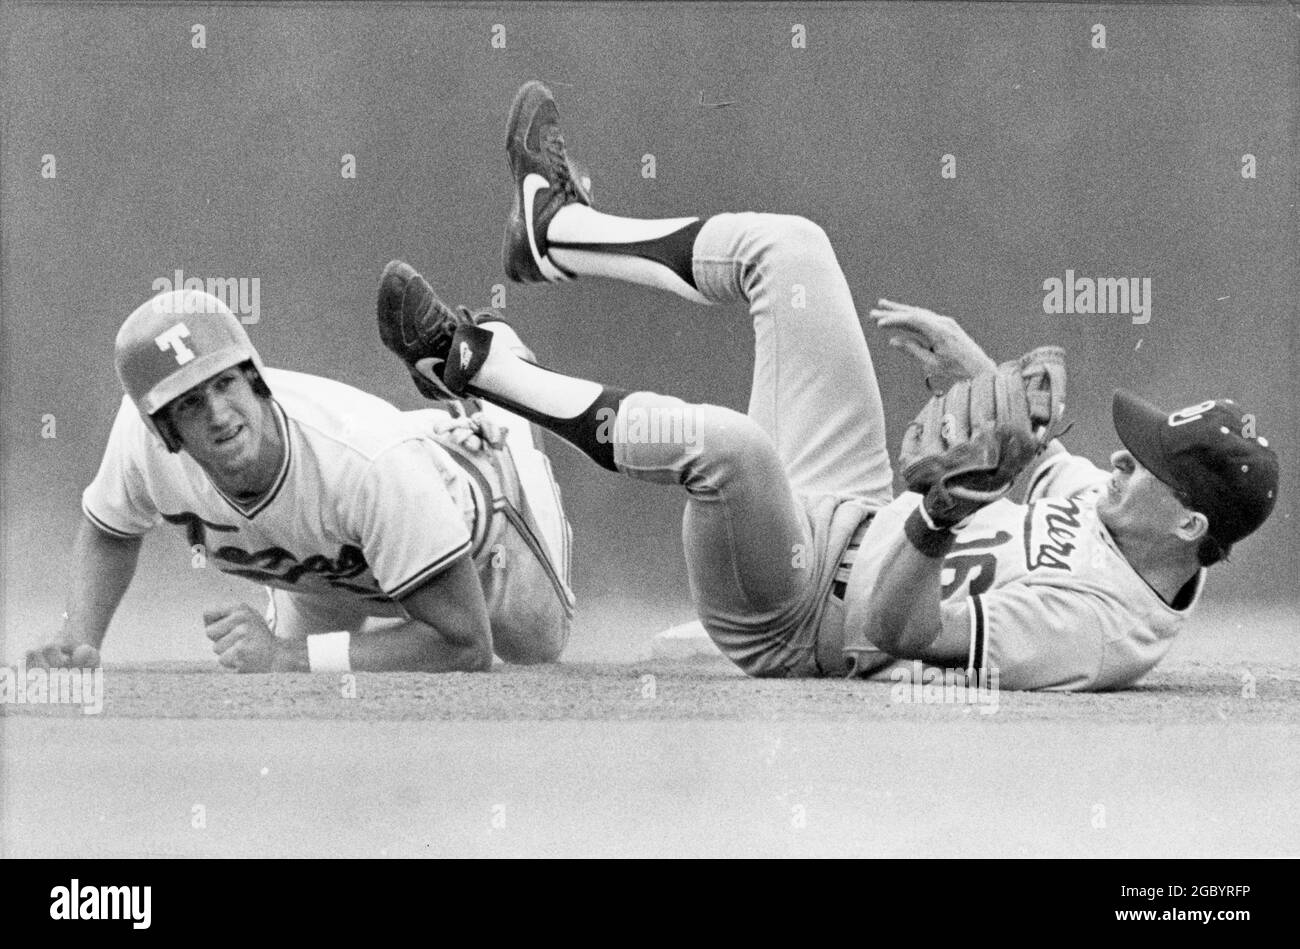 Austin Texas USA< um 1982: Action zwischen dem Baseballteam der University of Texas und den Gegnern auf dem Heimfeld von UT; der Infielder stürzt ab, während der Baserunner in die zweite Basis gleitet. ©Bob Daemmrich Stockfoto